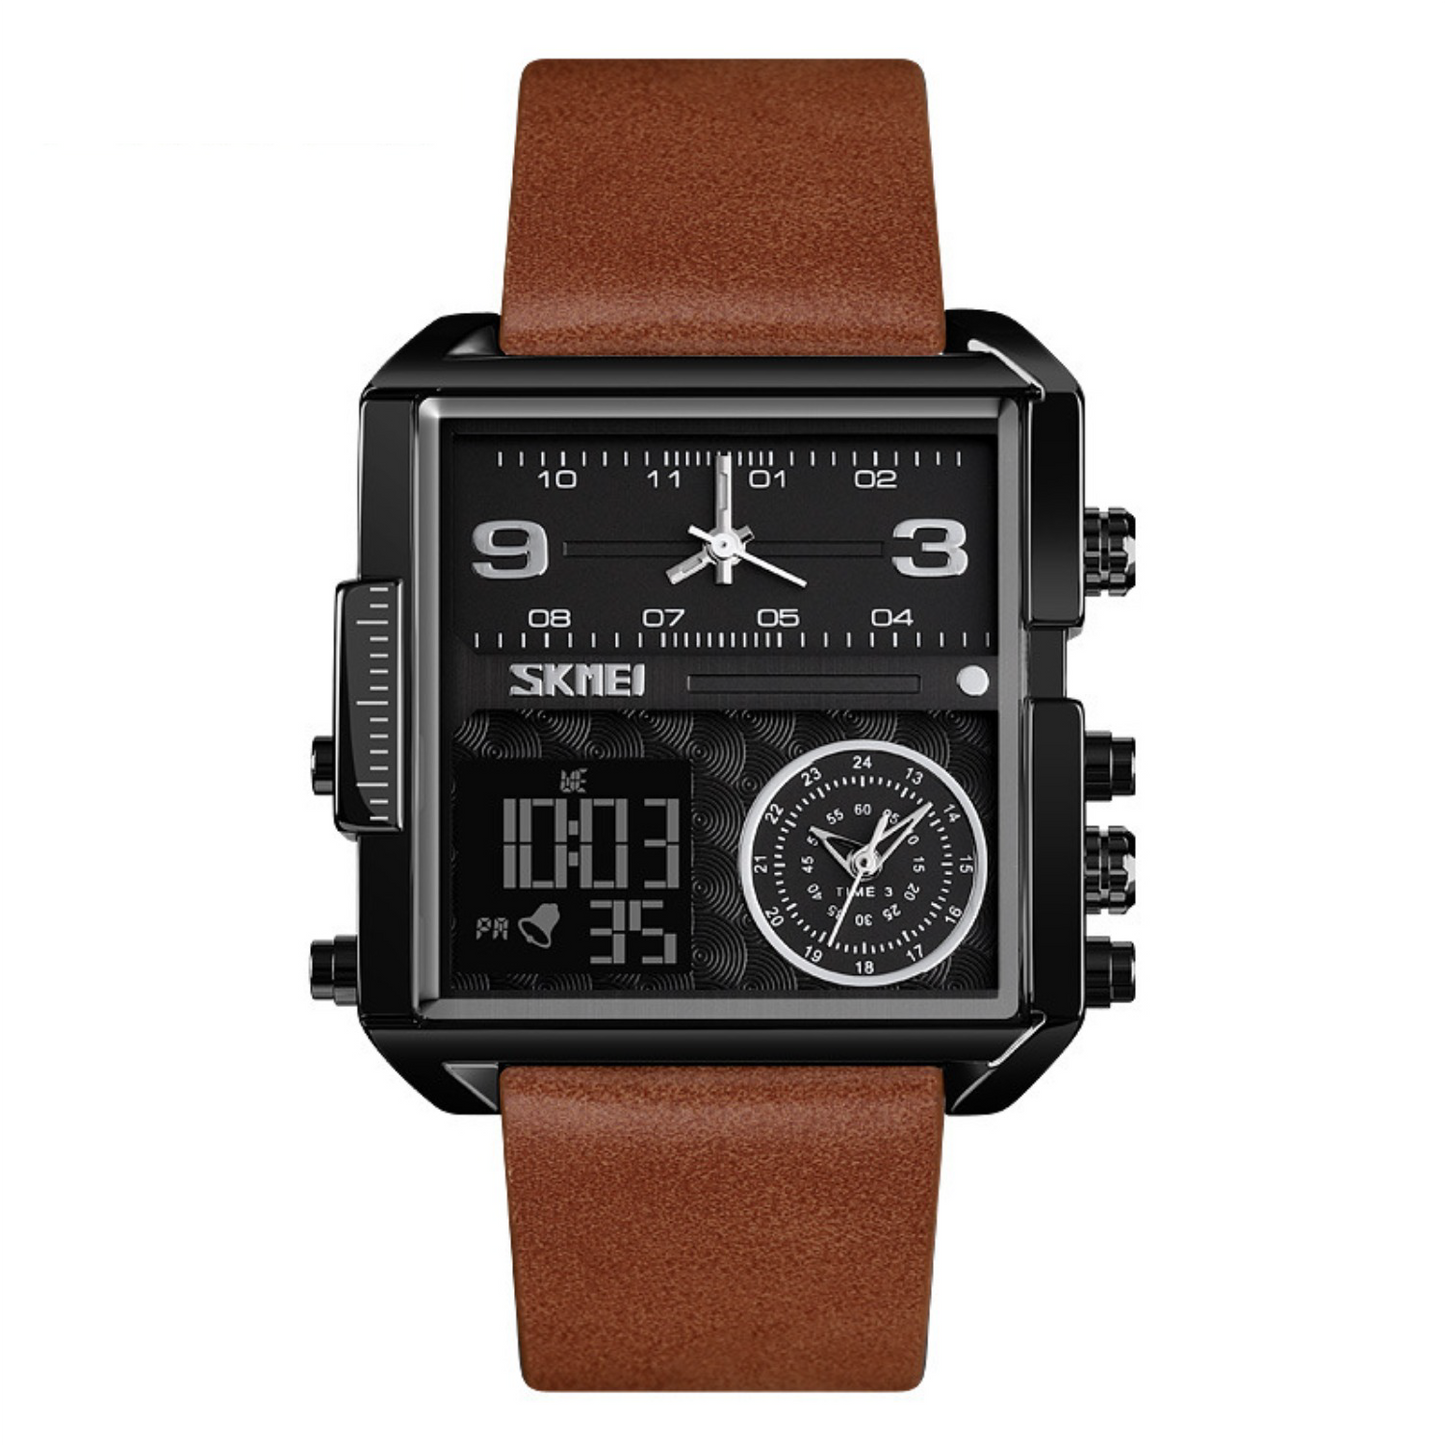 Stylish Square Electronic Watch